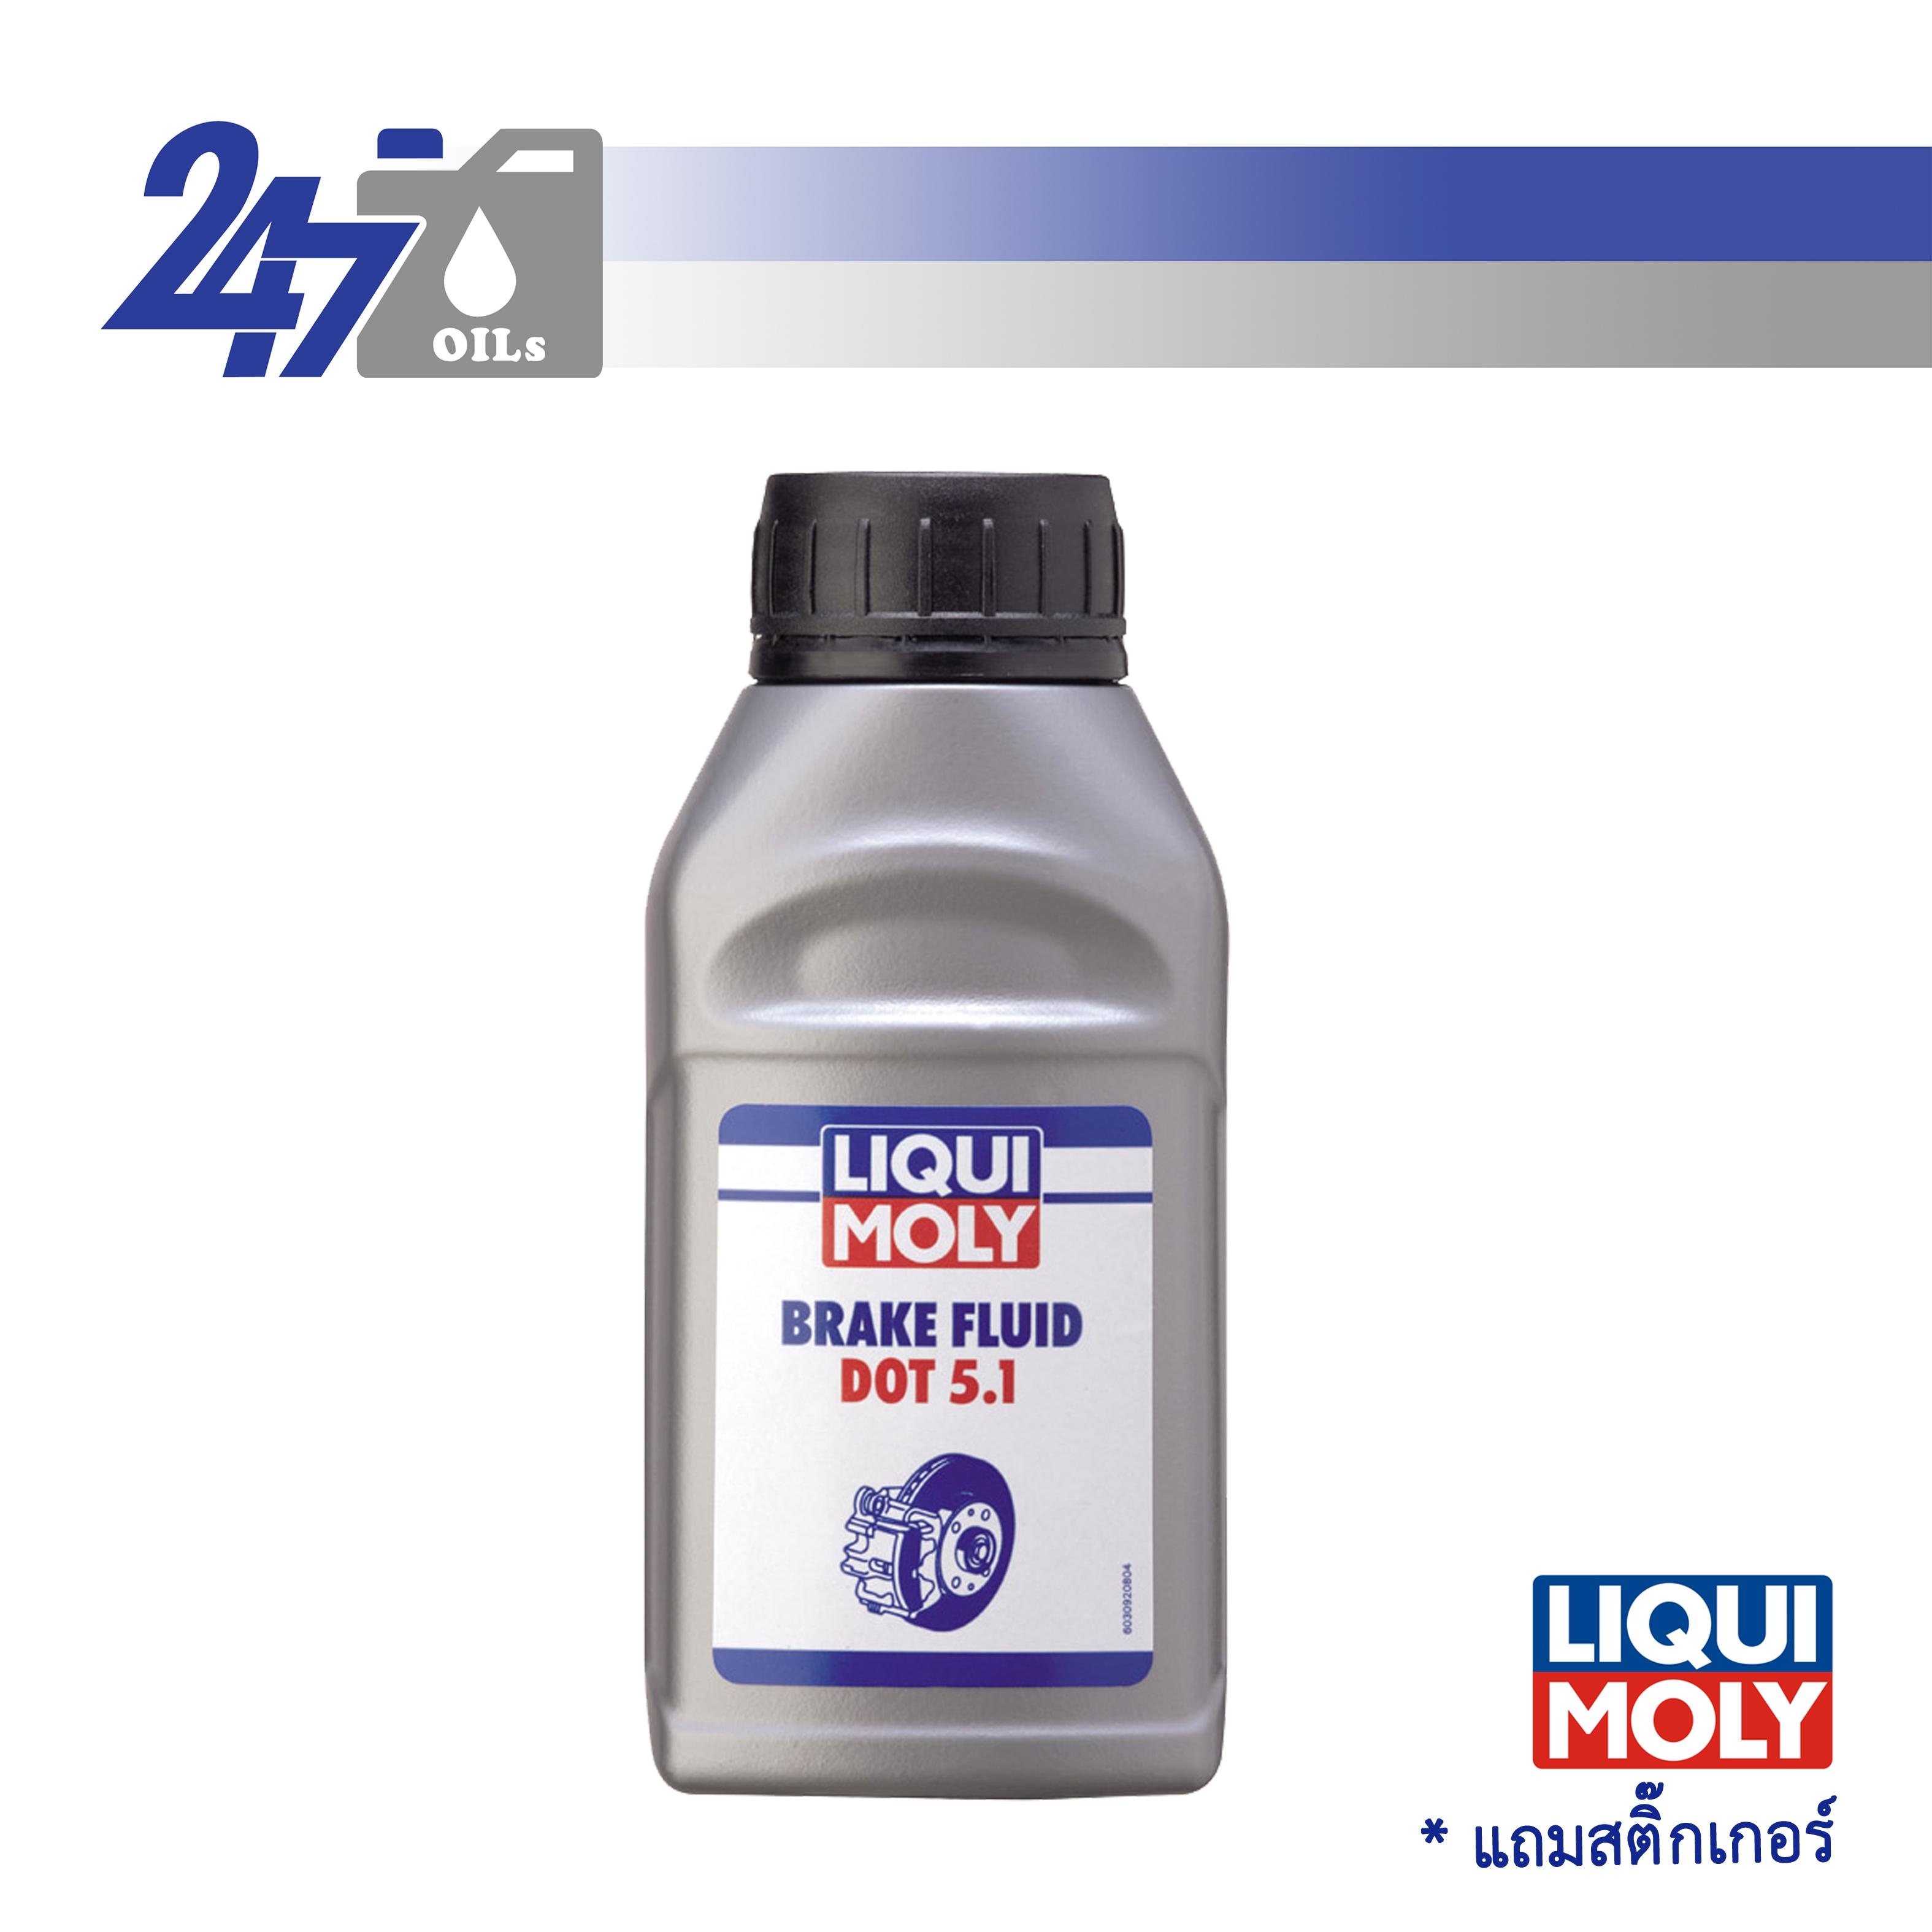 LIQUI MOLY น้ำมันเบรค Brake Fluid DOT 5.1 ขนาด 250 ml.